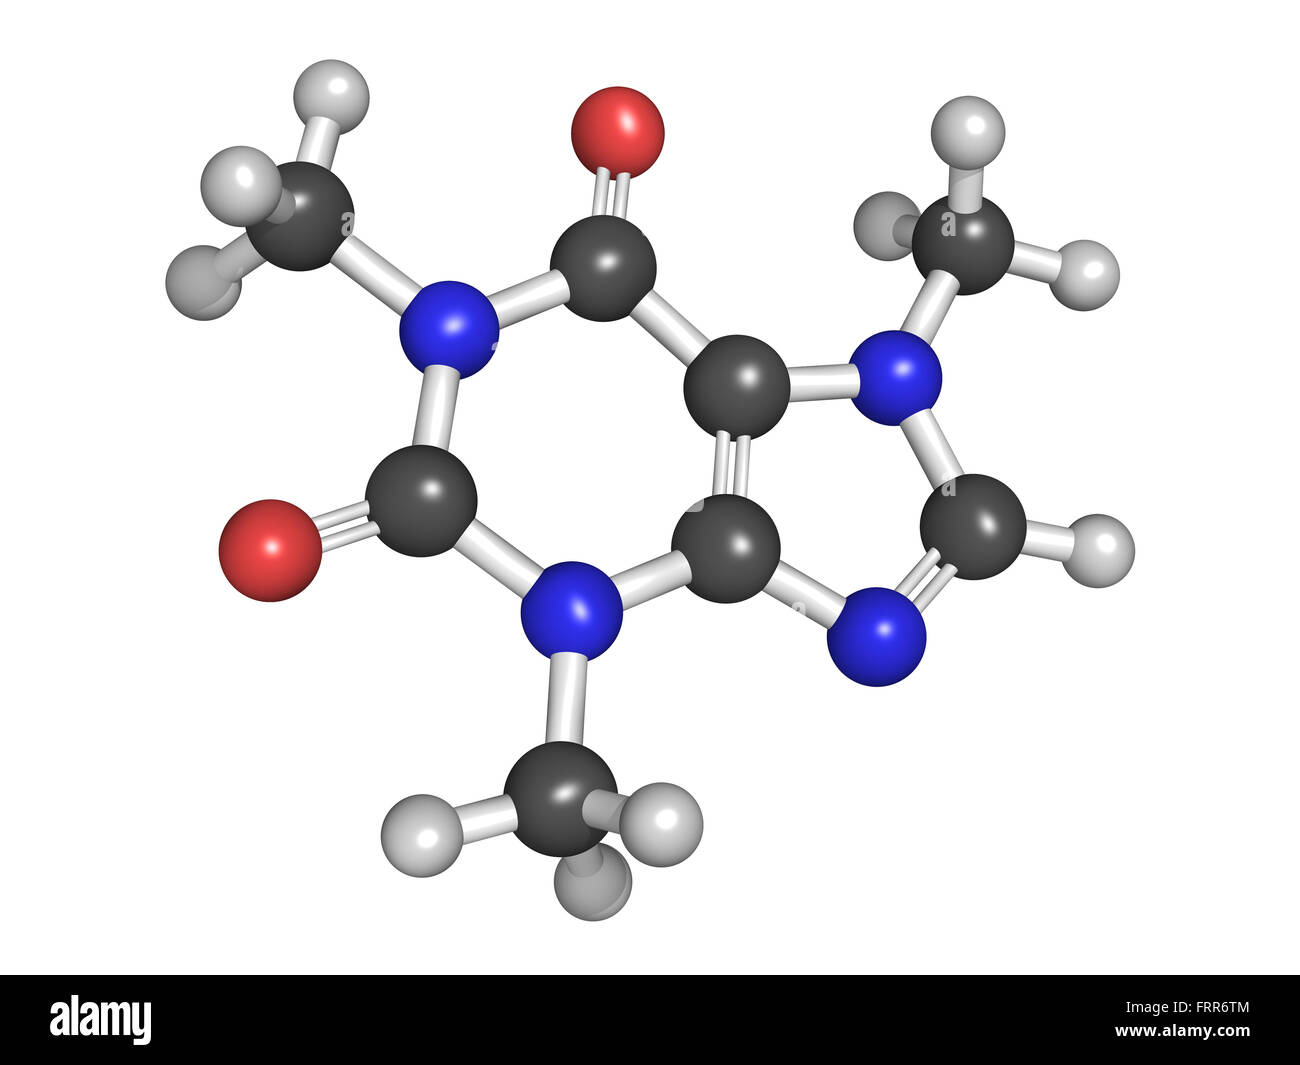 Modell des Stimulans Koffein in Kaffee und in Energy-Drinks gefunden. Atome werden als Kugeln mit herkömmlichen Farbe dargestellt. Stockfoto